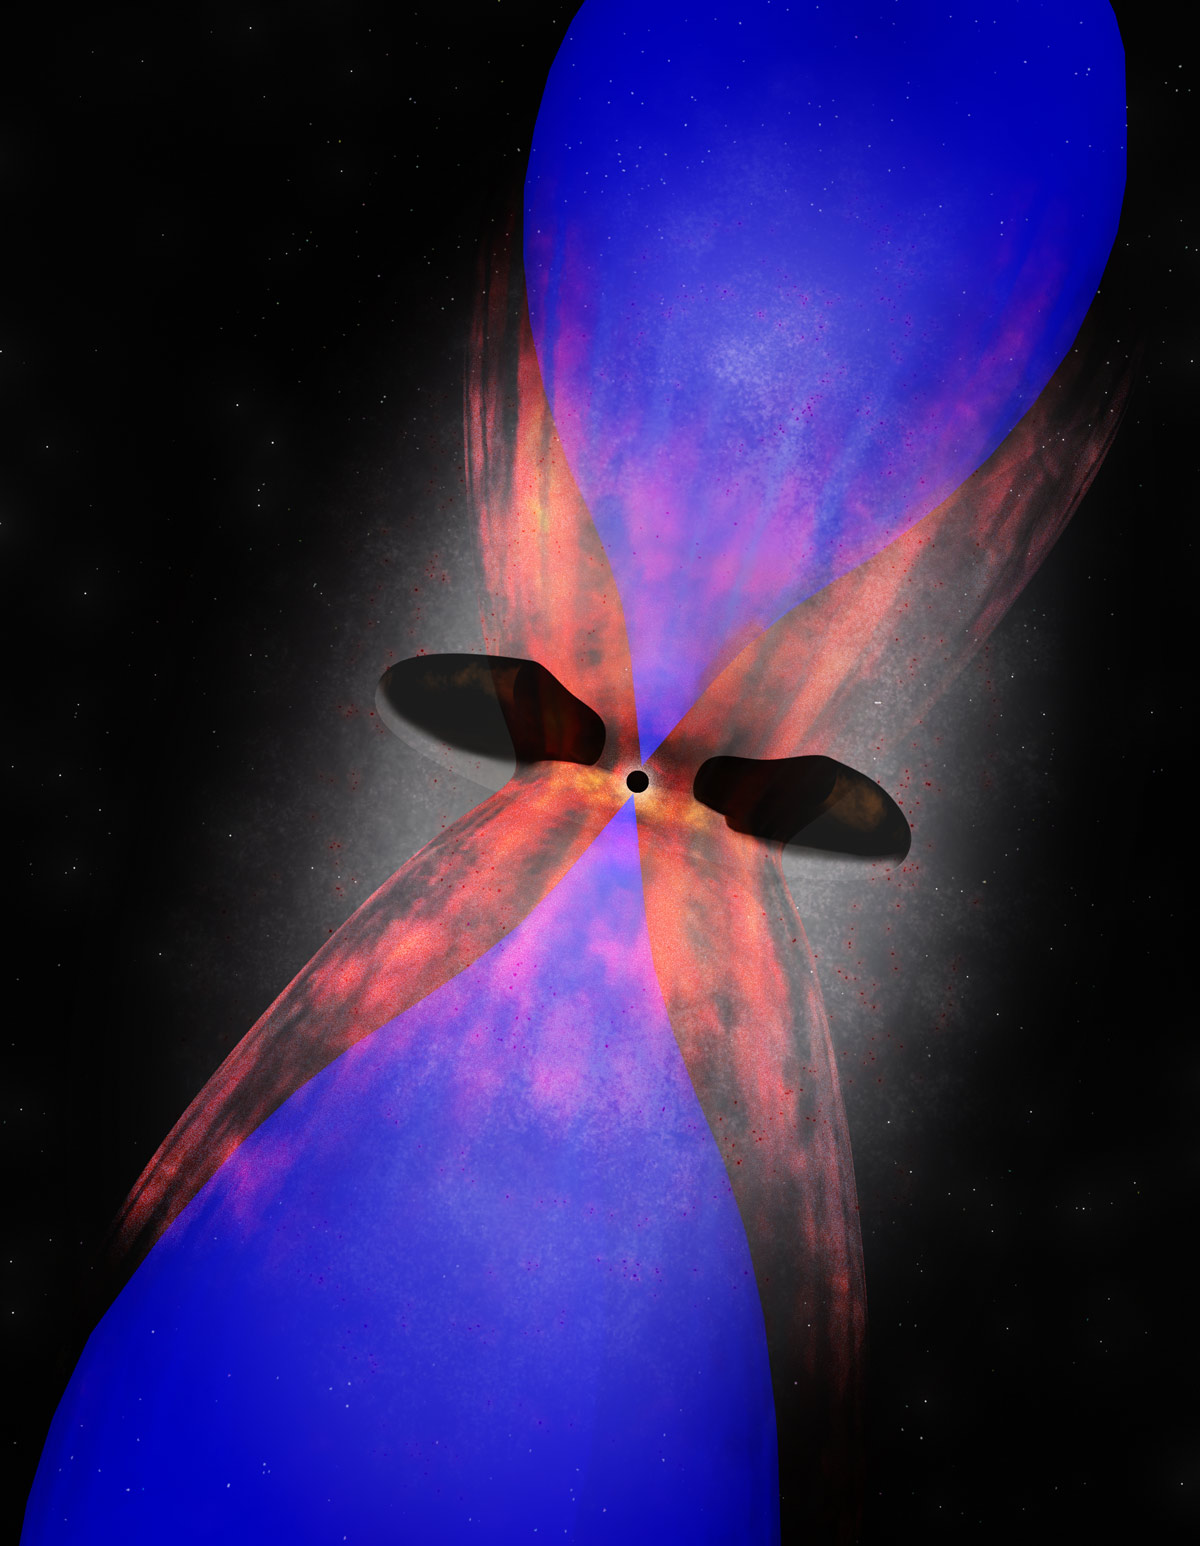 Supermasivní černá díra v srdci kupy Fénix. Modře bubliny horkého plynu, červeně chladný plyn. Kredit: B. Saxton (NRAO/AUI/NSF).